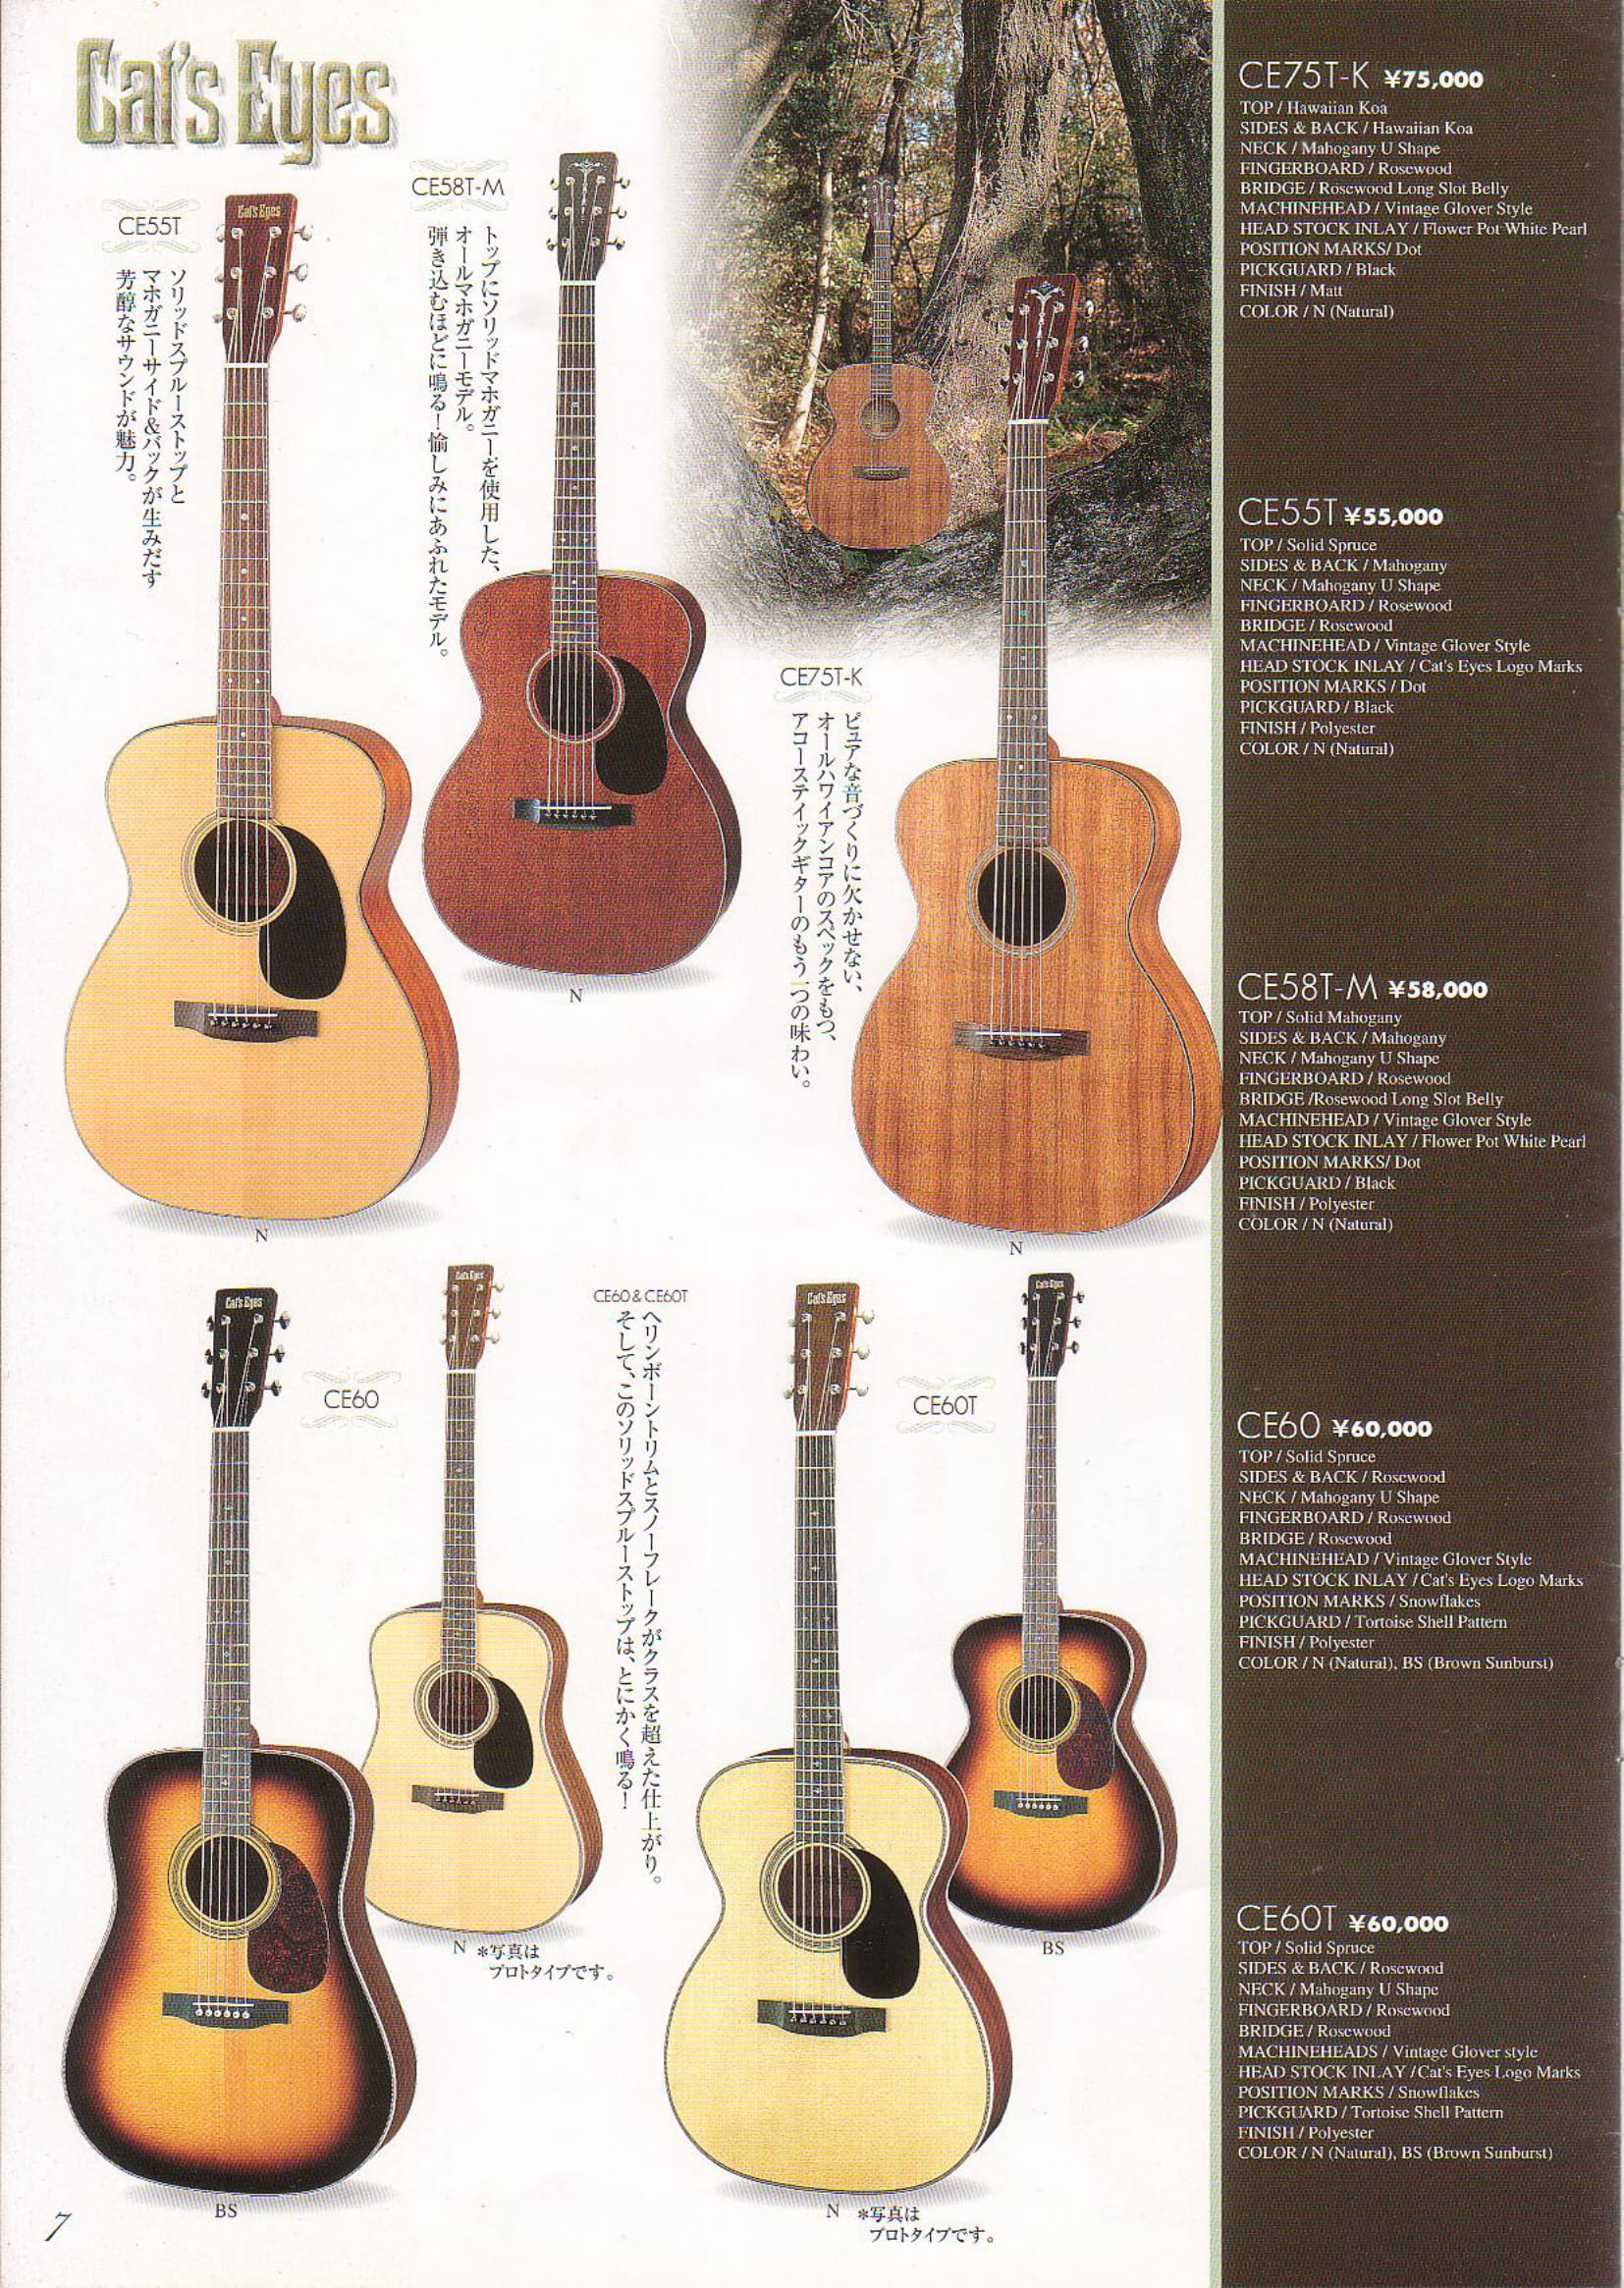 2001年vol.7 TOKAIアコースティックギター（Cat's Eyes）カタログ - ビンテージギターカタログ